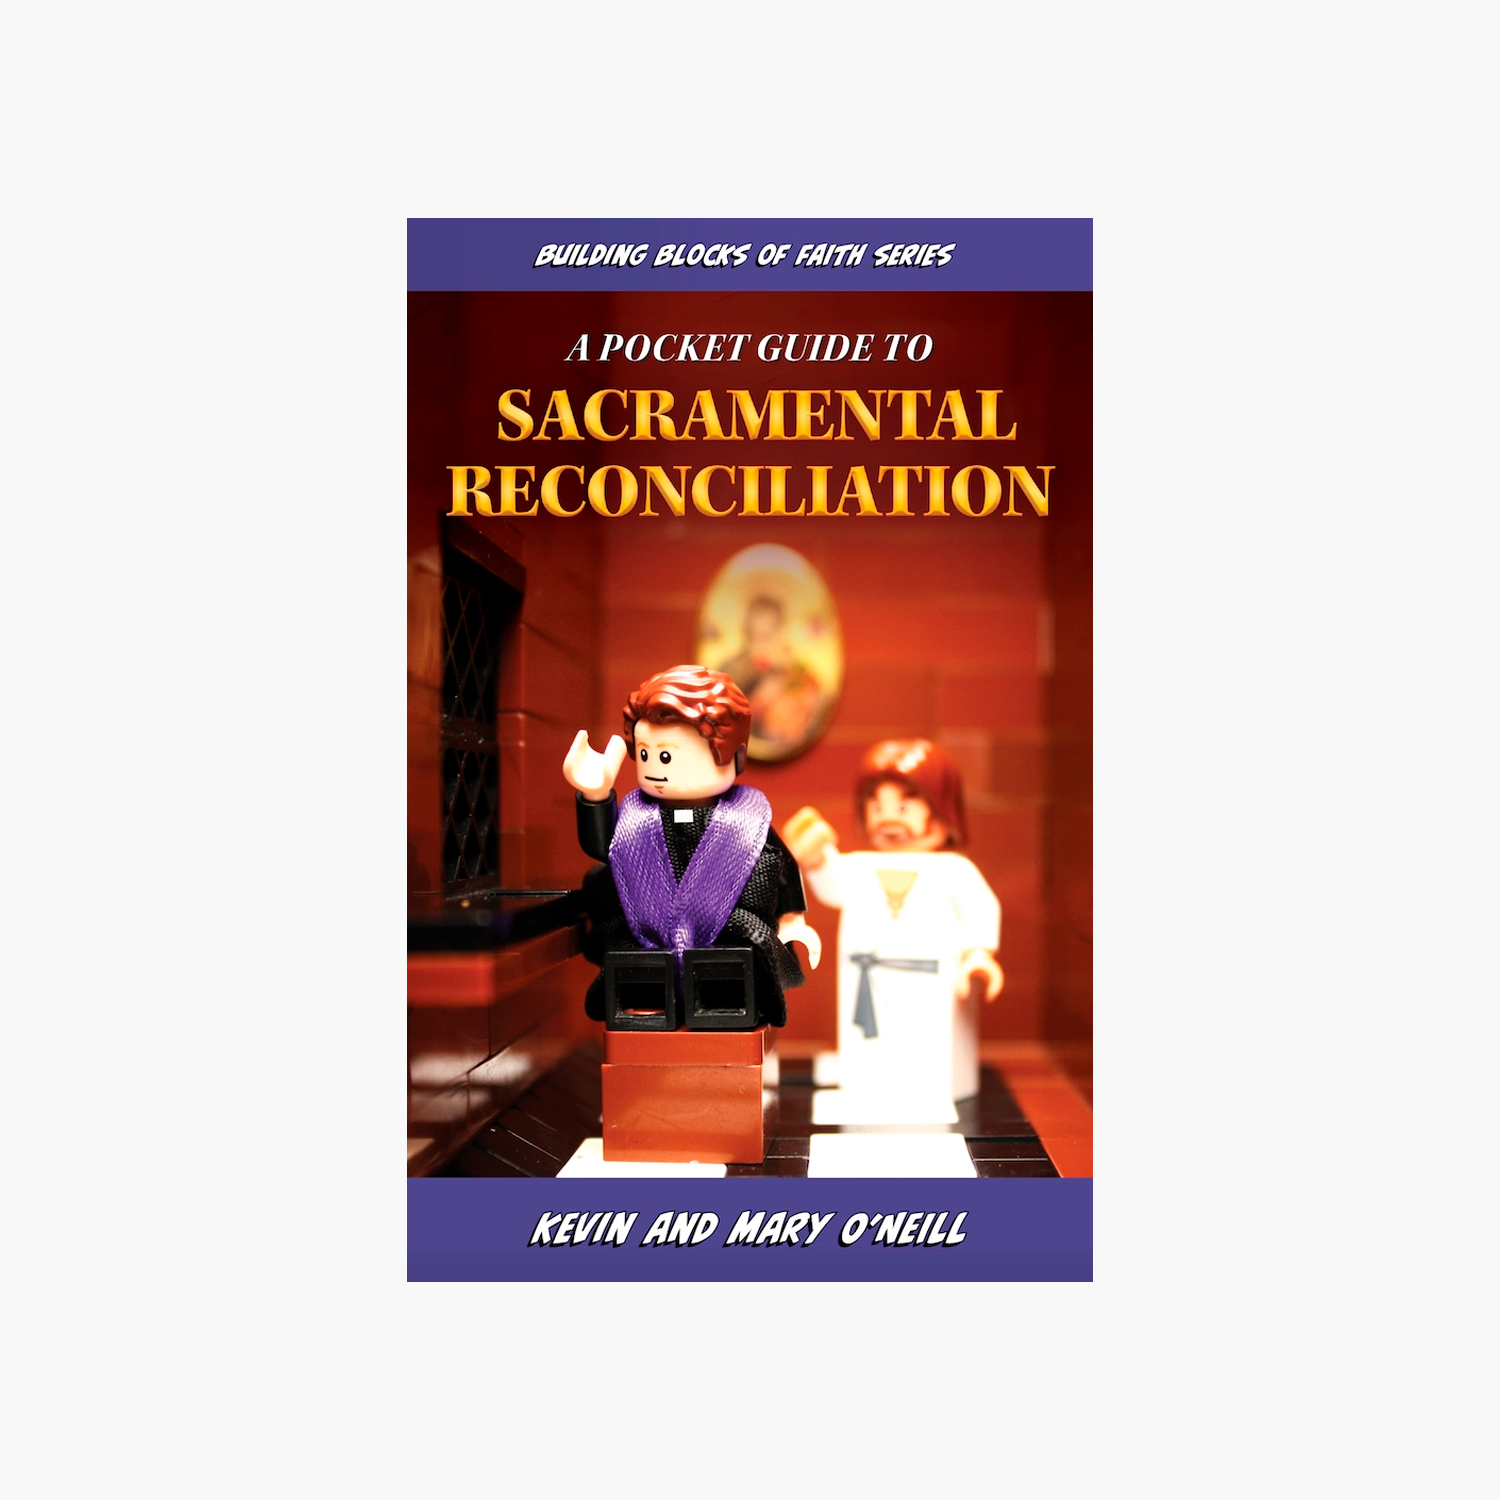 A Pocket Guide to Sacramental Reconciliation